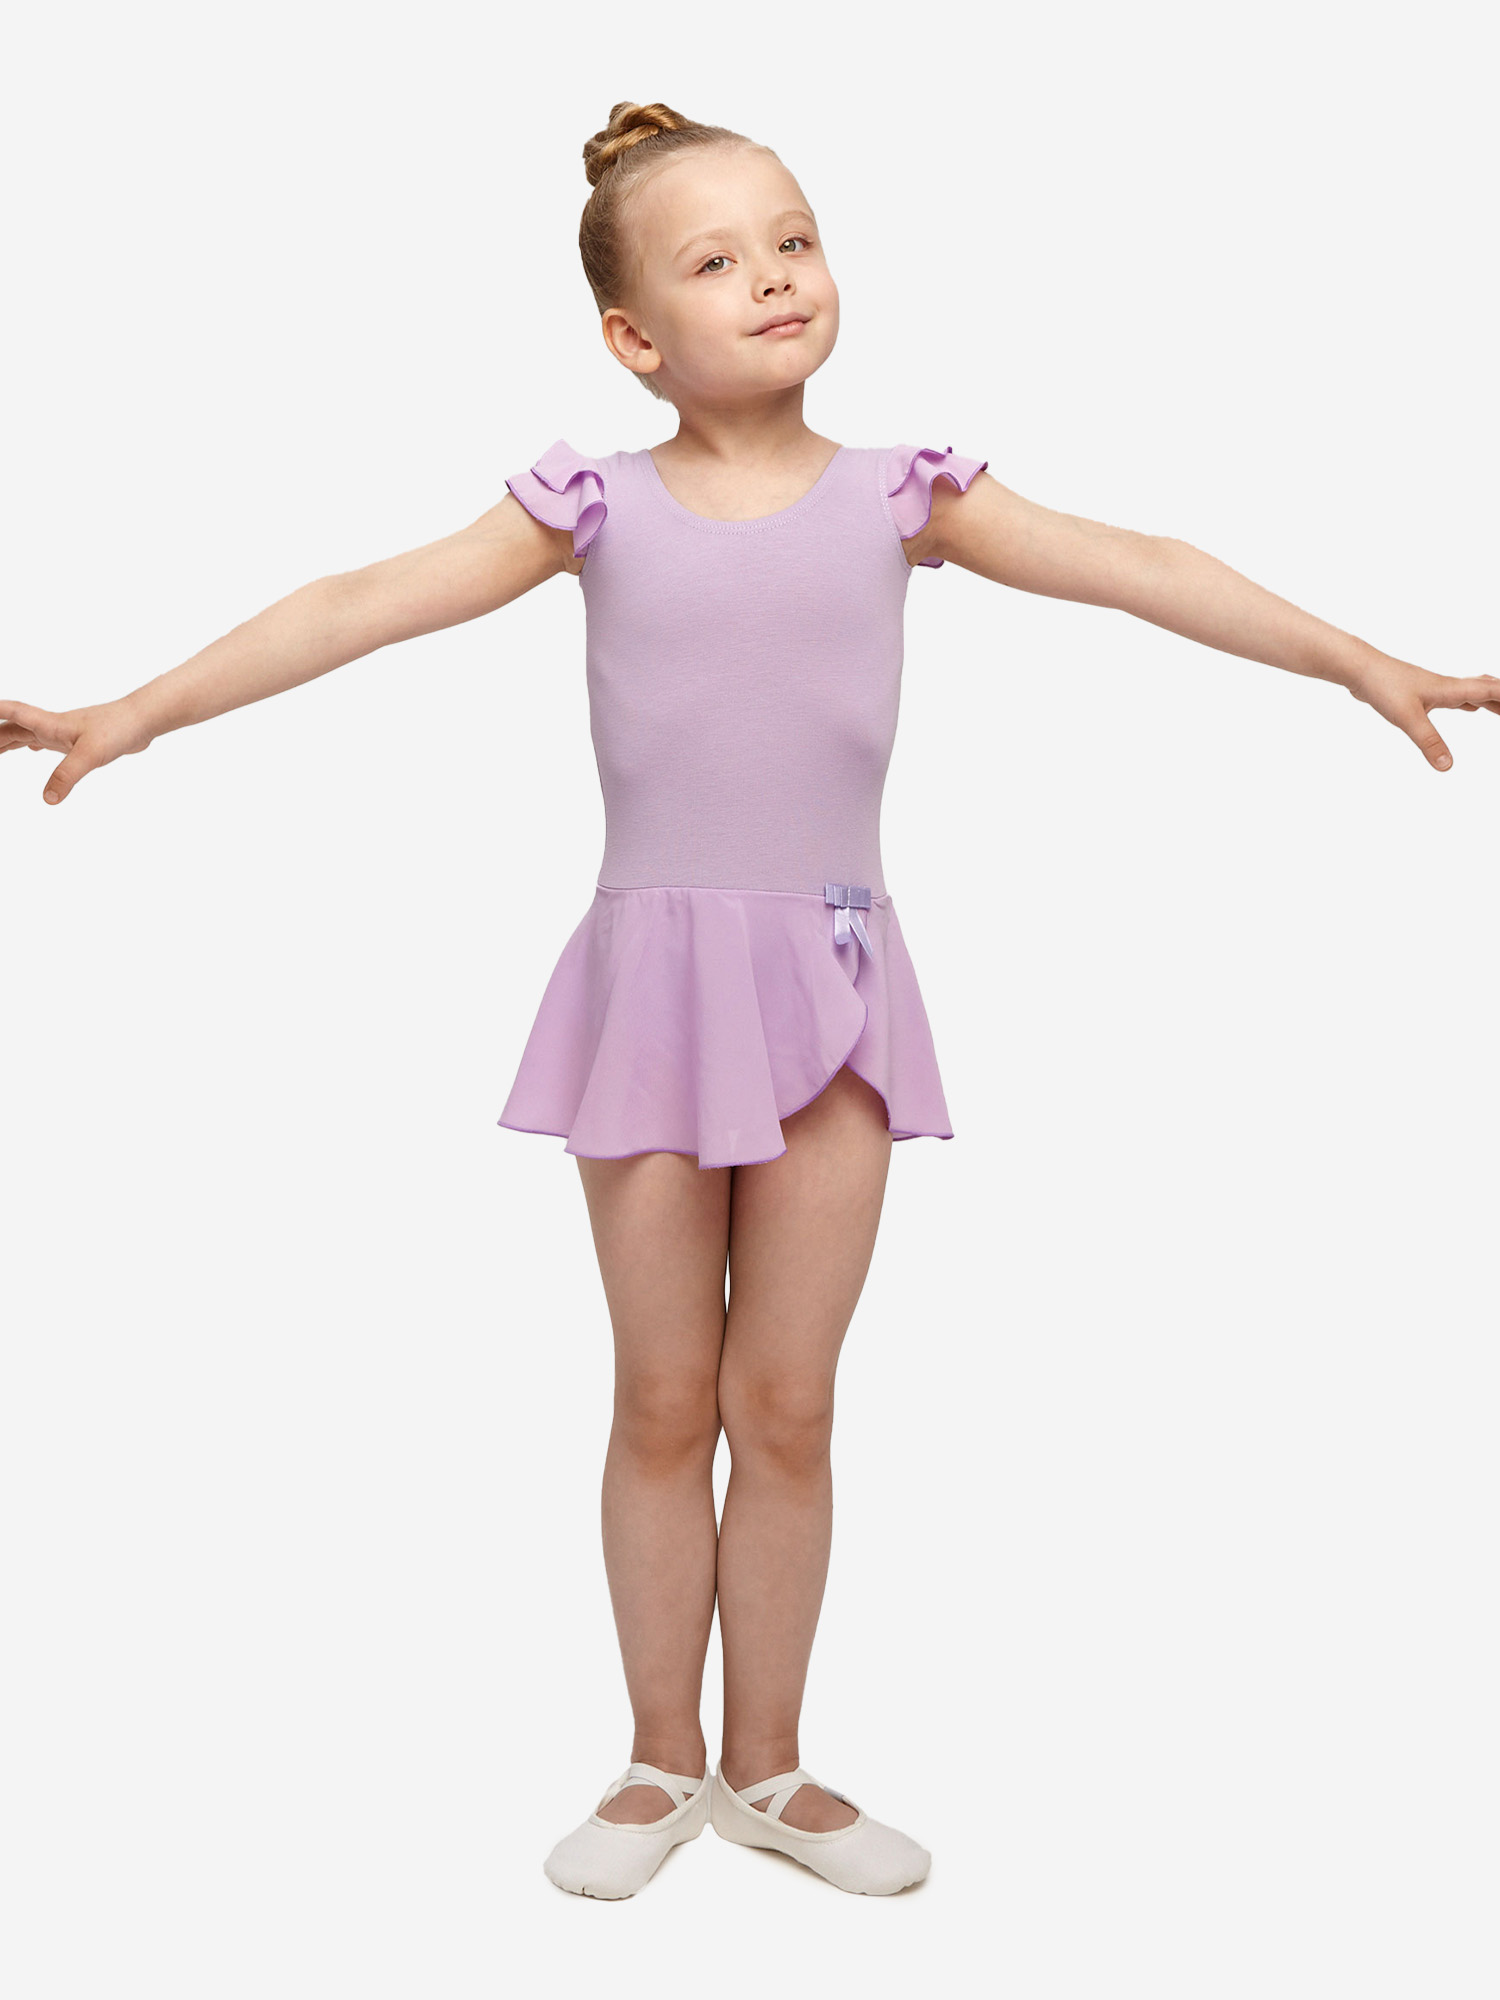 Купальник гимнастический Belkina с юбкой для танцев и тренировок, Фиолетовый купальник гимнастический belkina с юбкой для танцев и тренировок